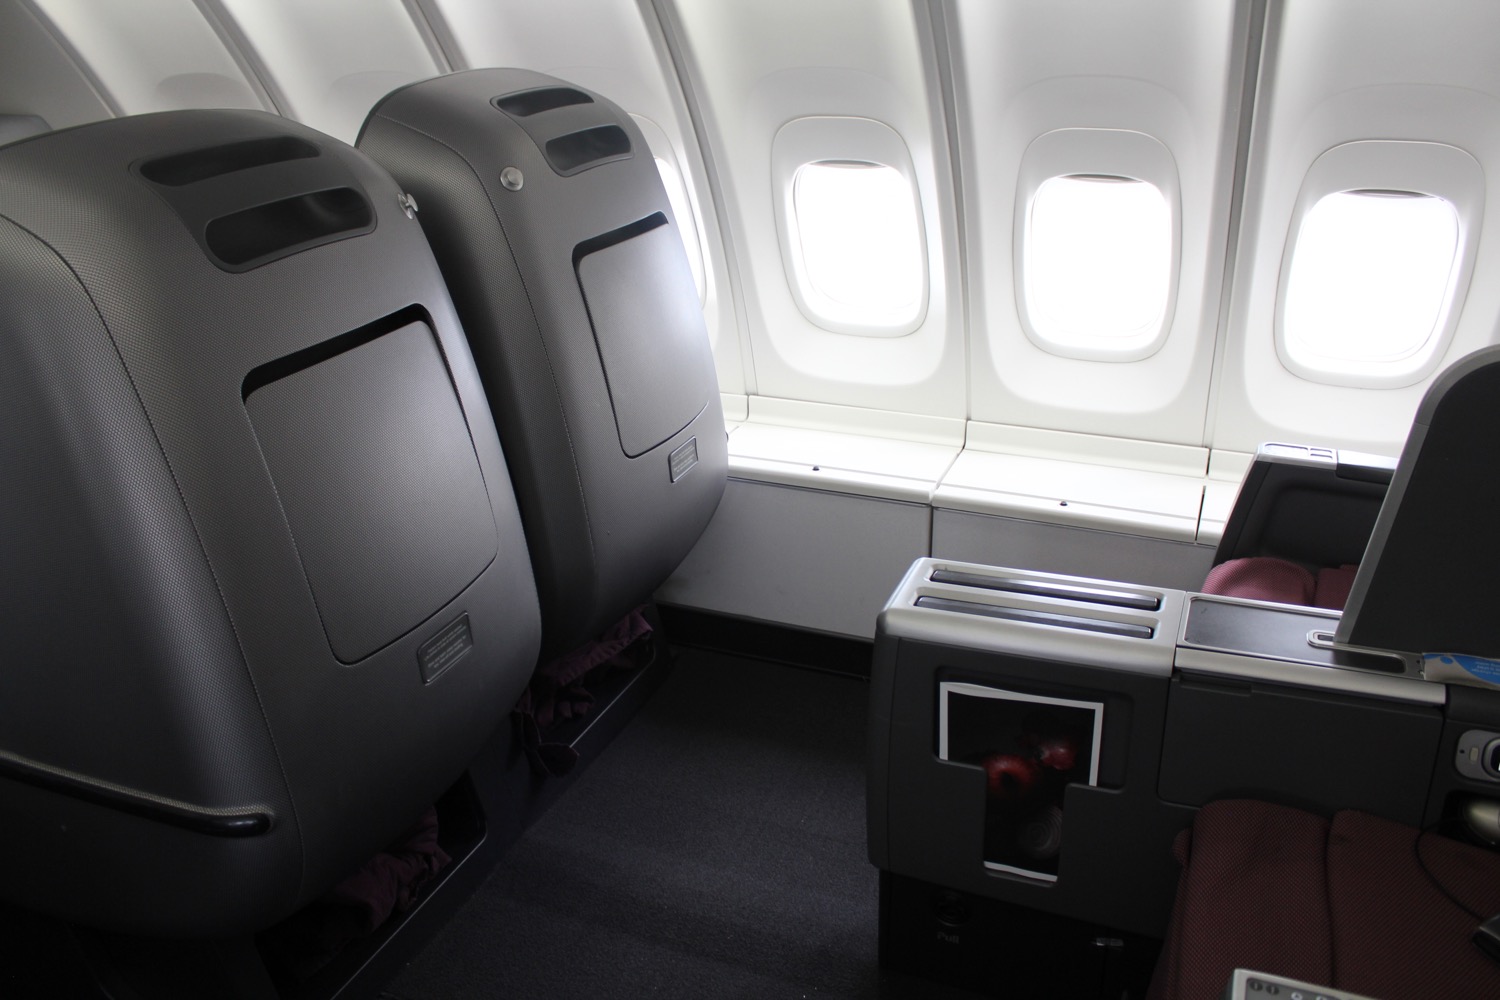 Qantas Business Class 747 Review - 44